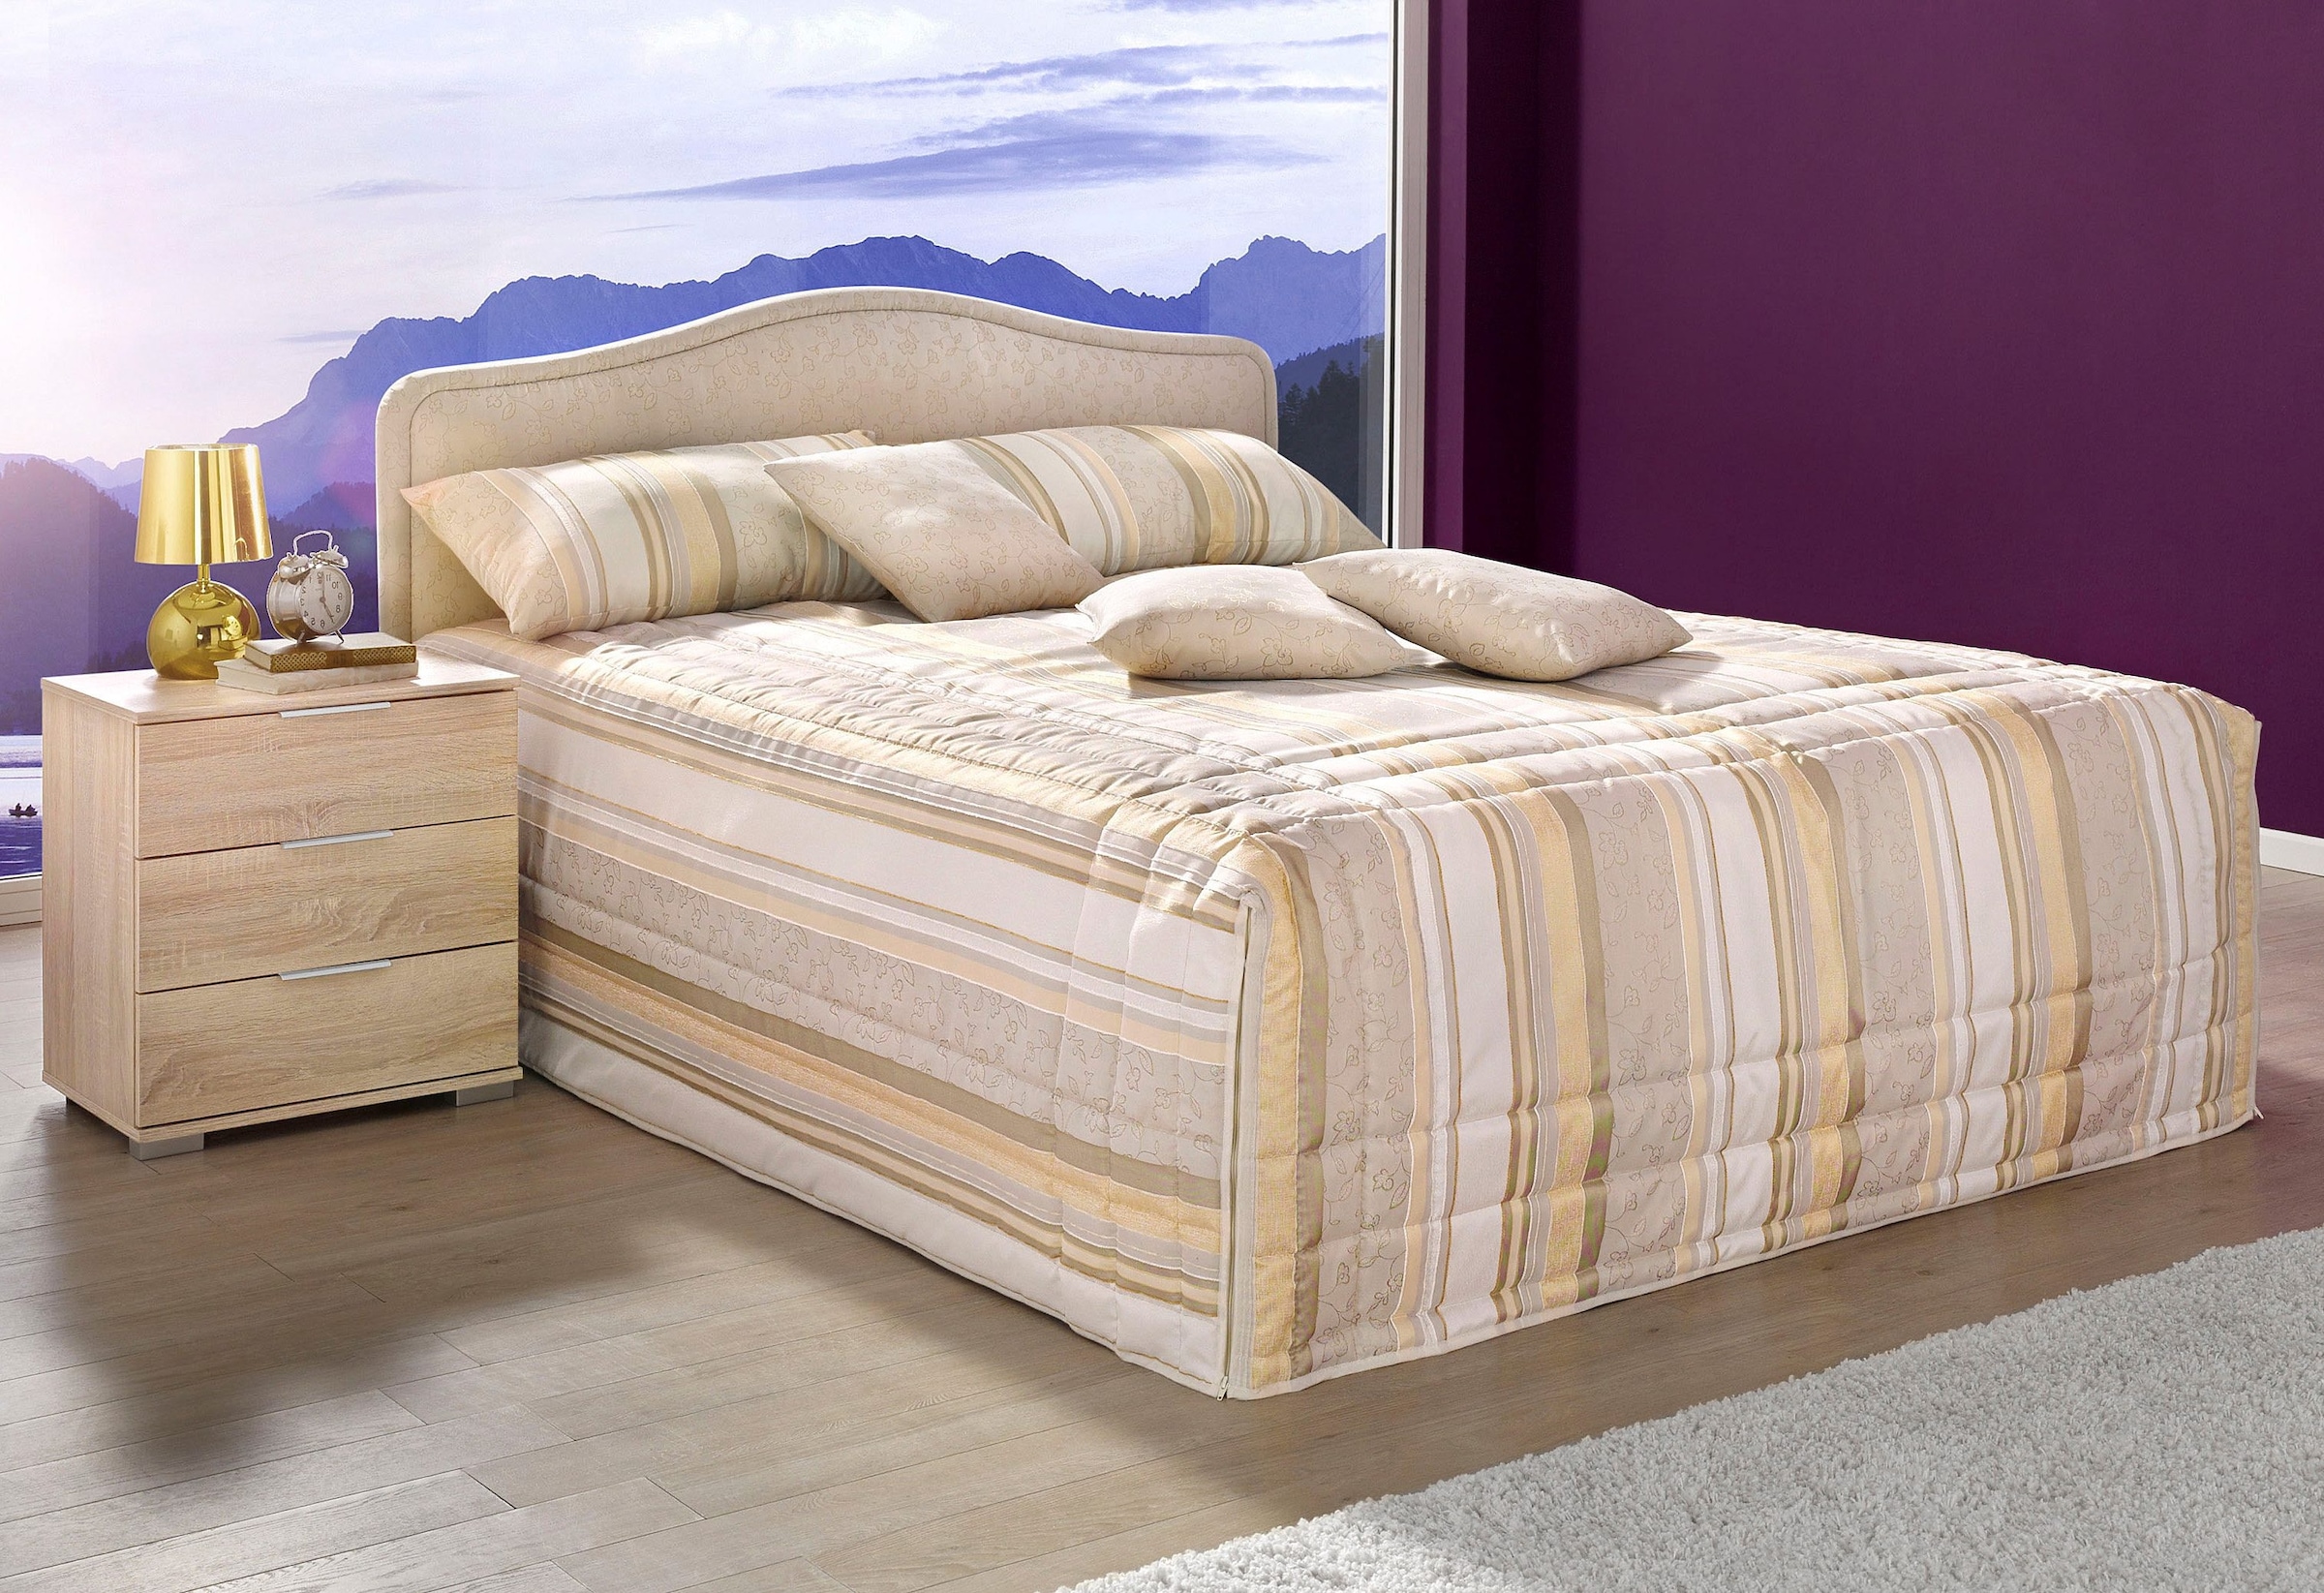 Preisvergleich für Westfalia Schlafkomfort mit Ausführung Beige bei BxHxT 140x42x200 cm, der Polsterbett, Tagesdecke in und inkl. Farbe Bettkasten Ladendirekt Matratze, 